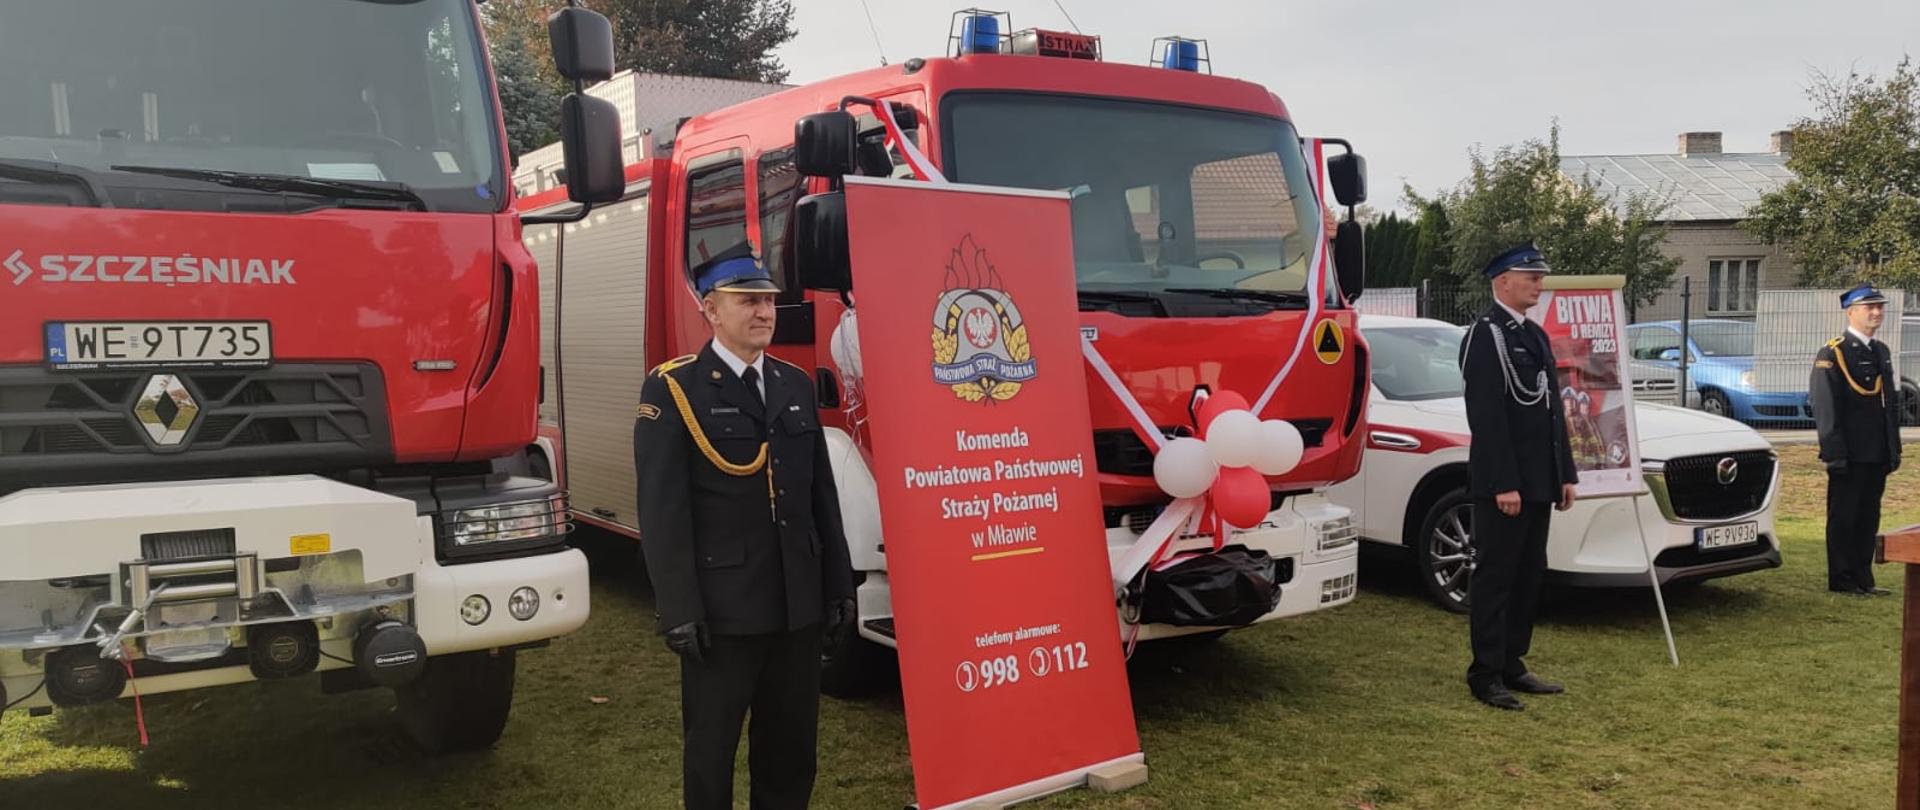 Uroczystość z okazji włączenia jednostek ochotniczych straży pożarnych do krajowego systemu ratowniczo-gaśniczego oraz przekazania samochodów pożarniczych